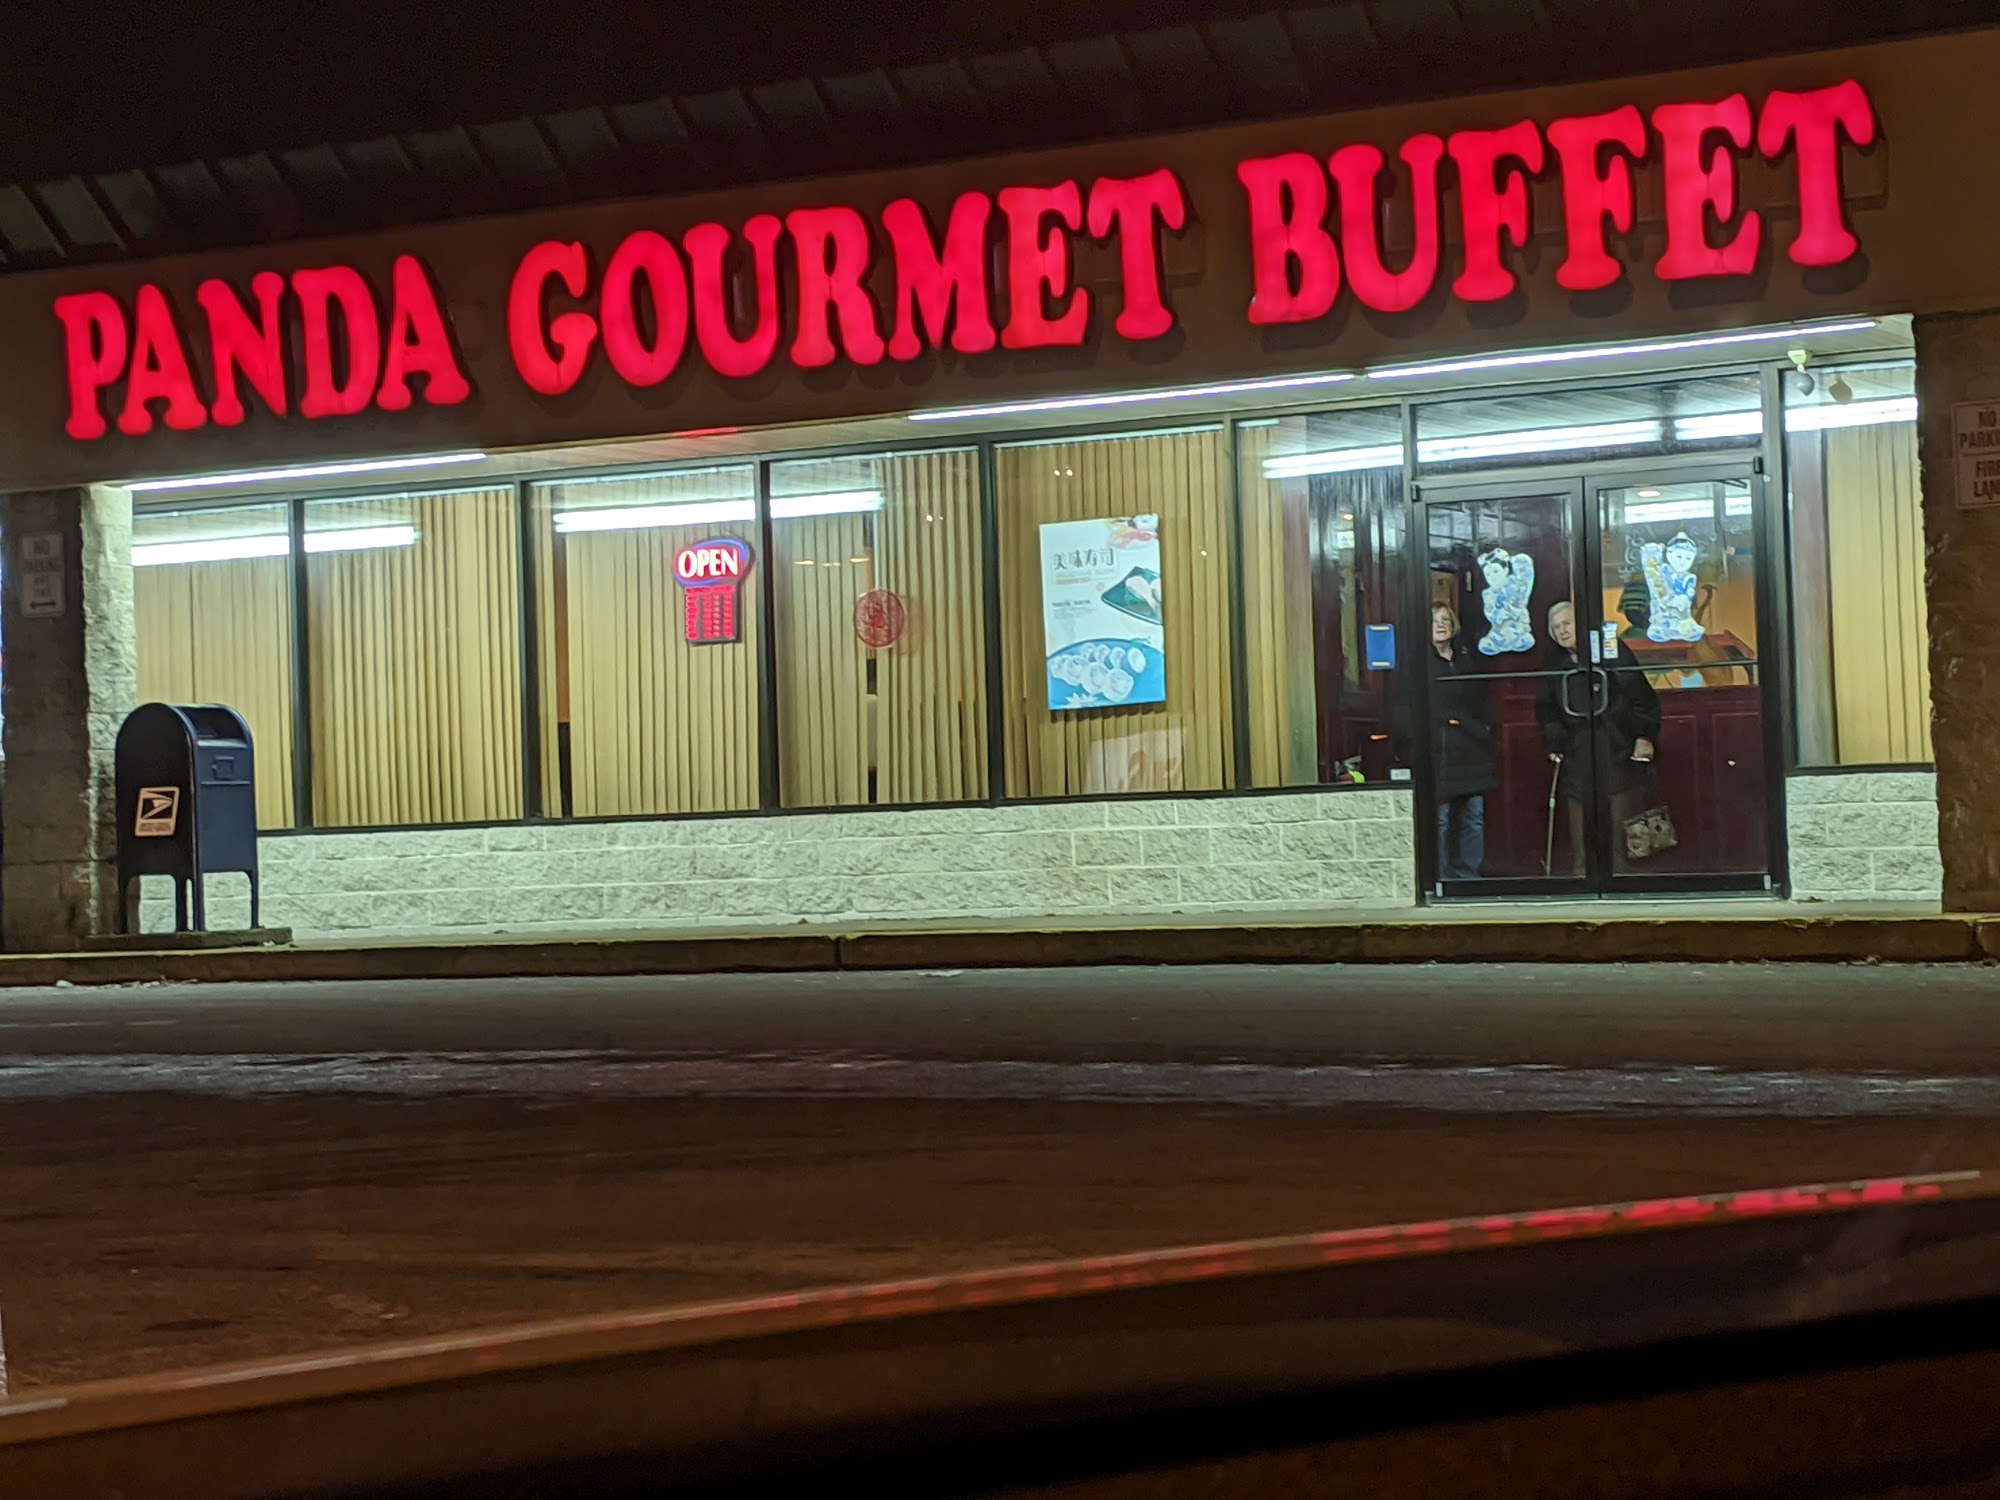 Panda Gourmet Buffet